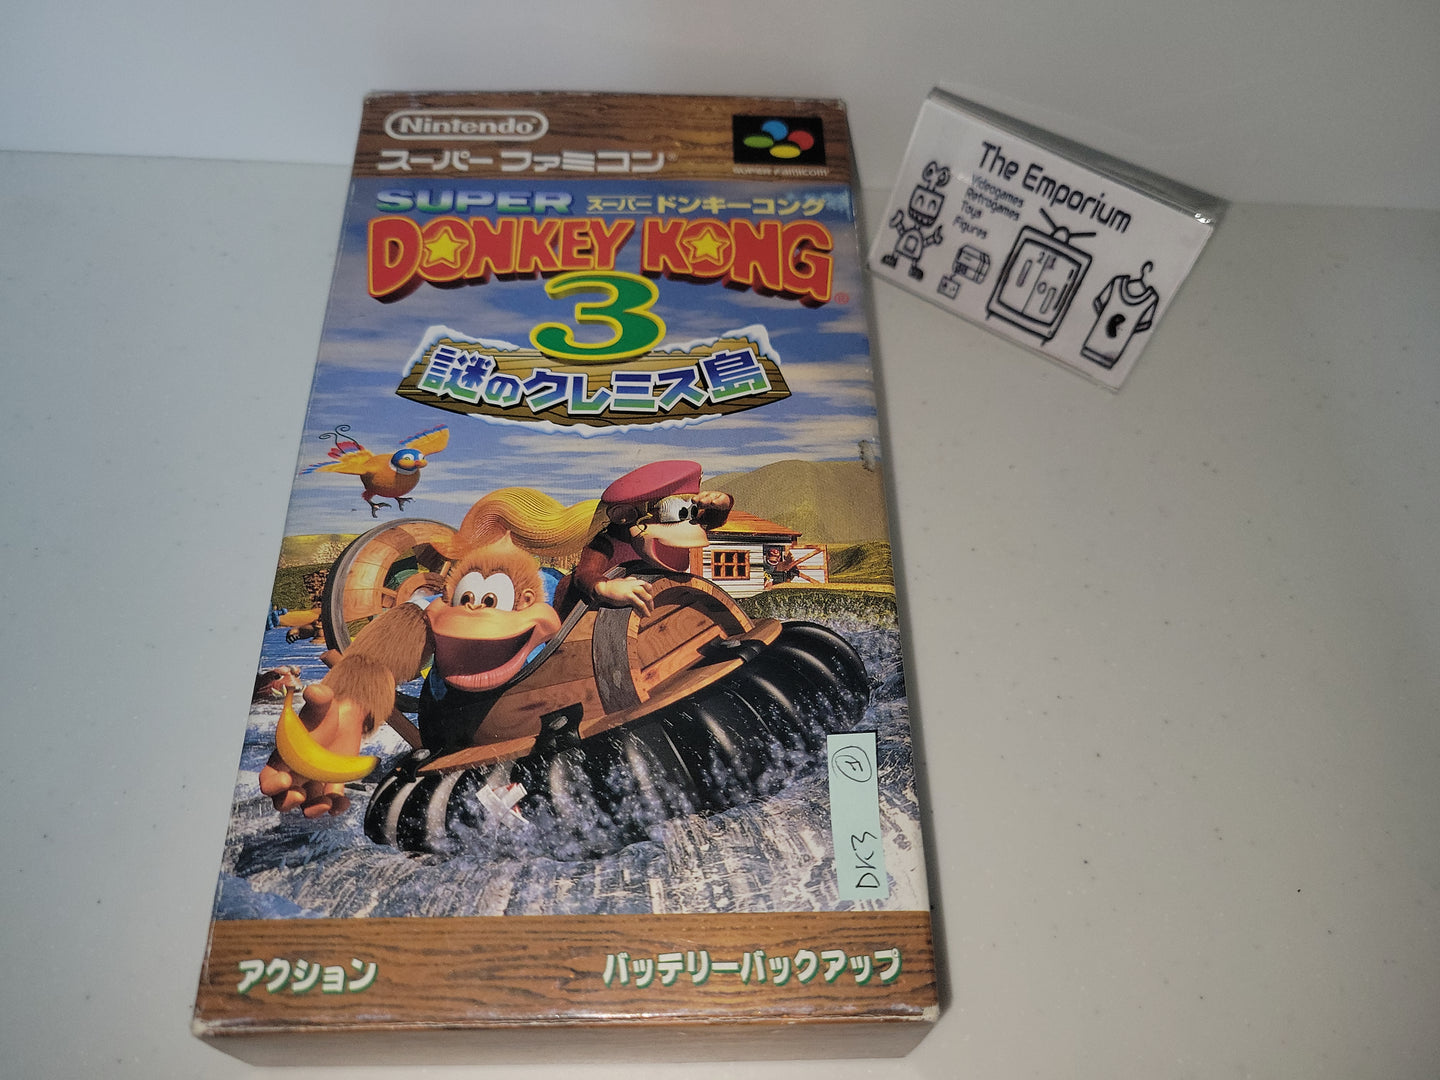 Super Donkey Kong 3 - Nintendo Sfc Super Famicom